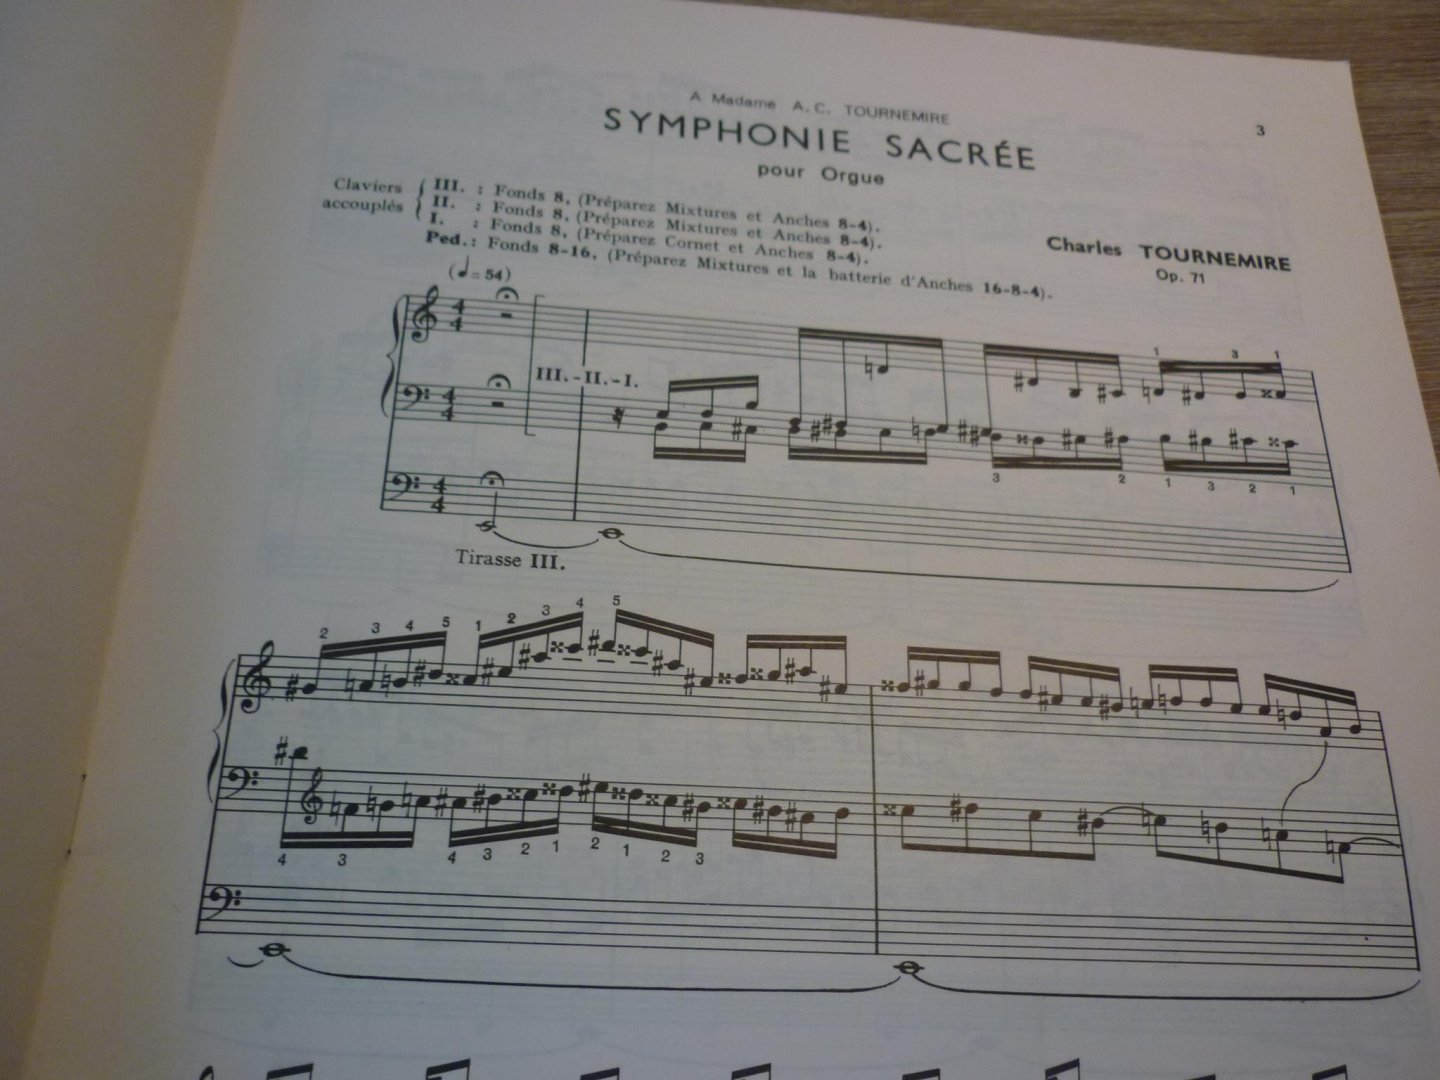 Tournemire; Charles (1870–1939) - Symphonie Sacrée pour orgue